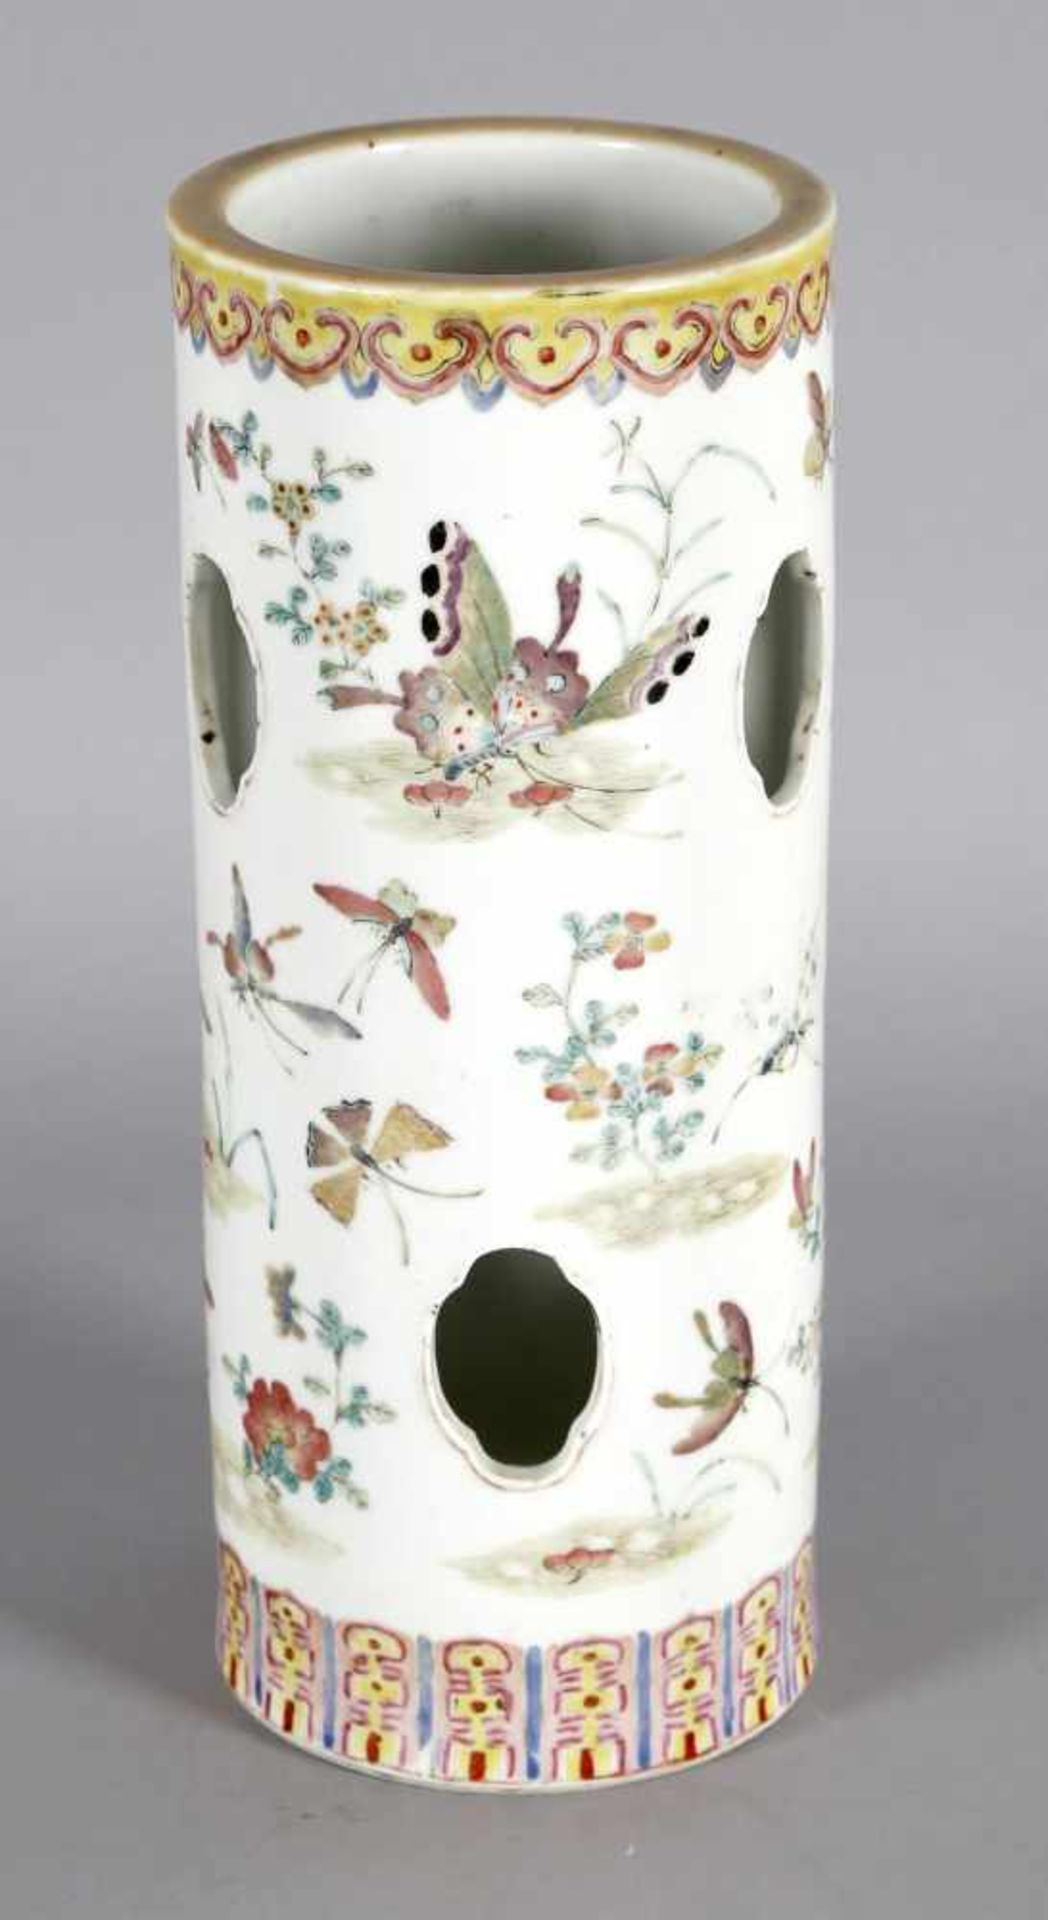 Hutständer aus Porzellan, China, 19. Jh.zylindrische Form mit ovalen Öffnungen in der Wandung,